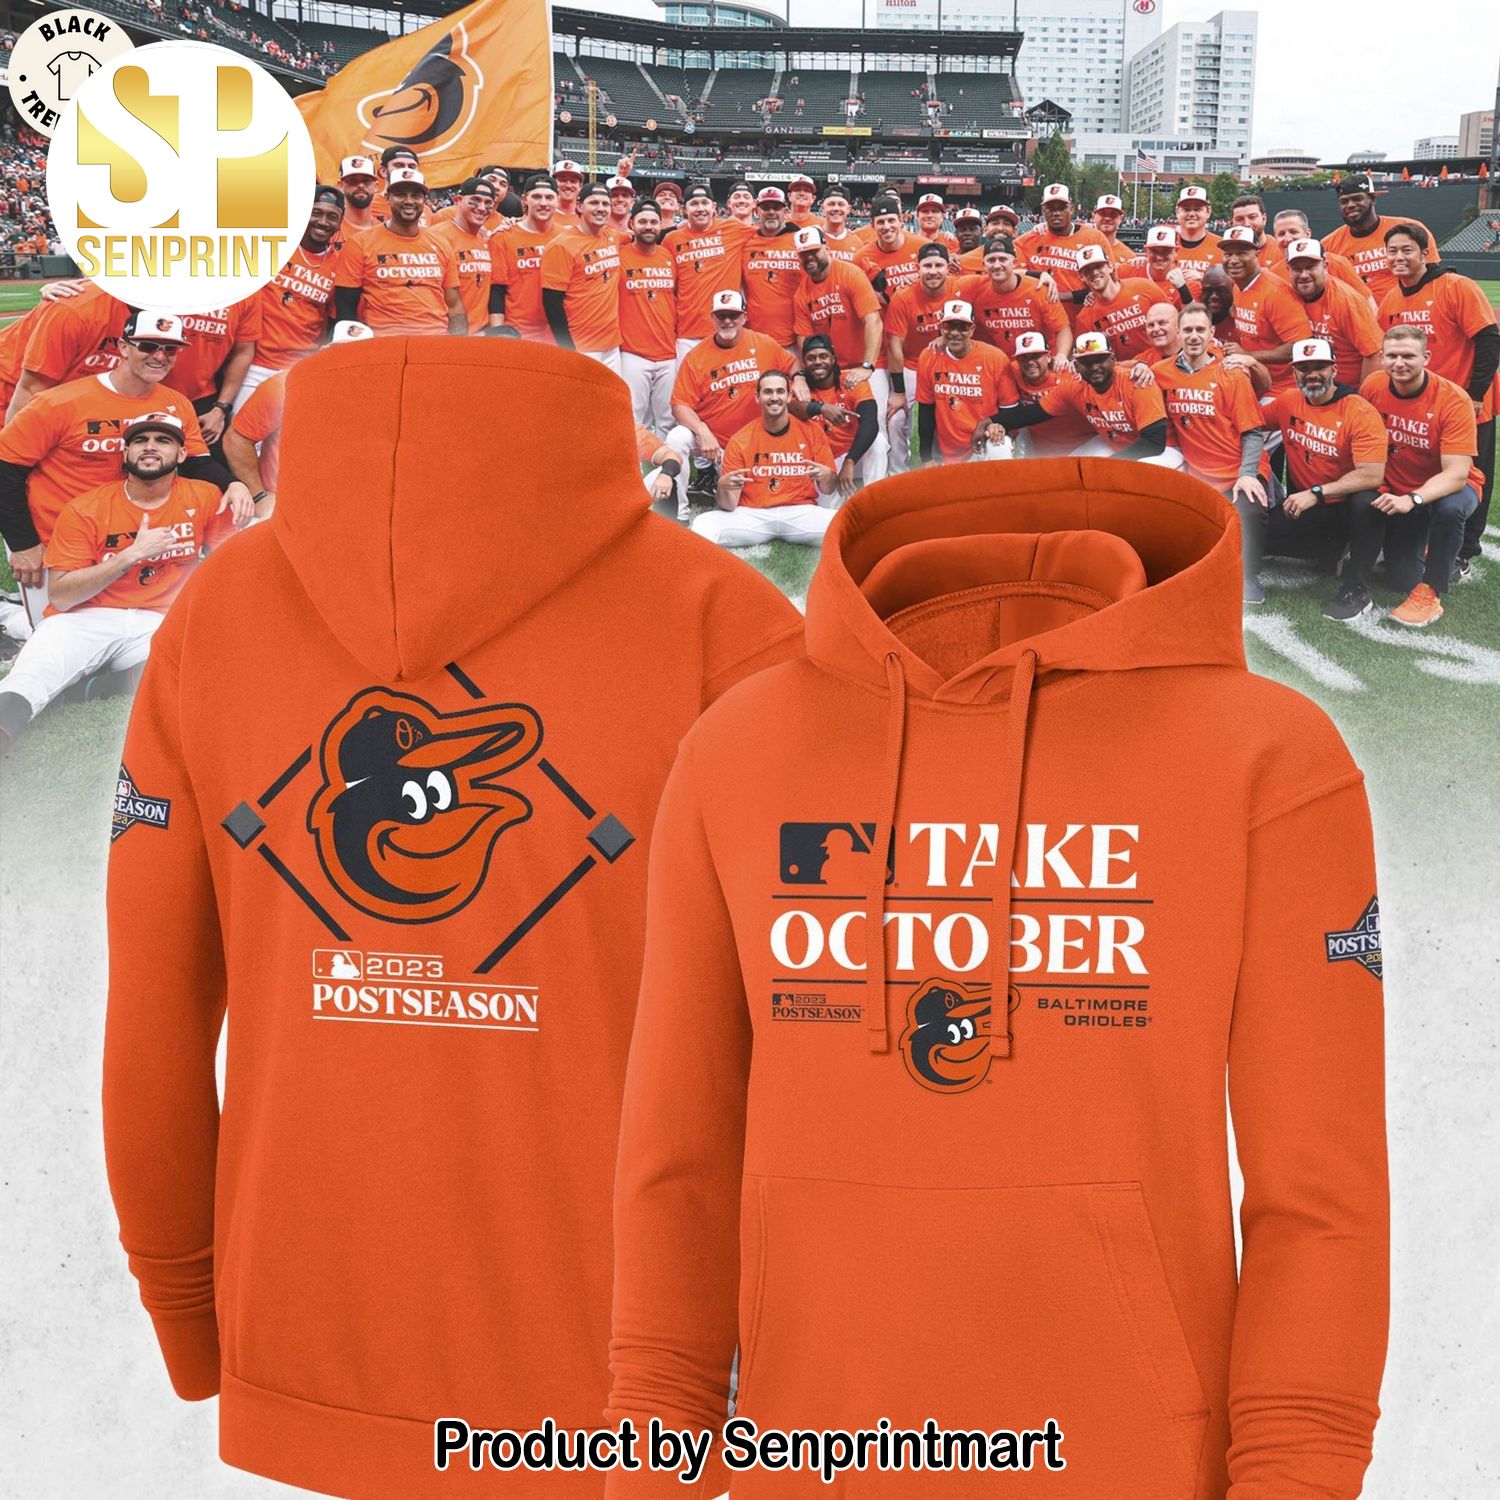 Take October Baltimore Orioles 2023 Postseason Orange Full Printed Shirt